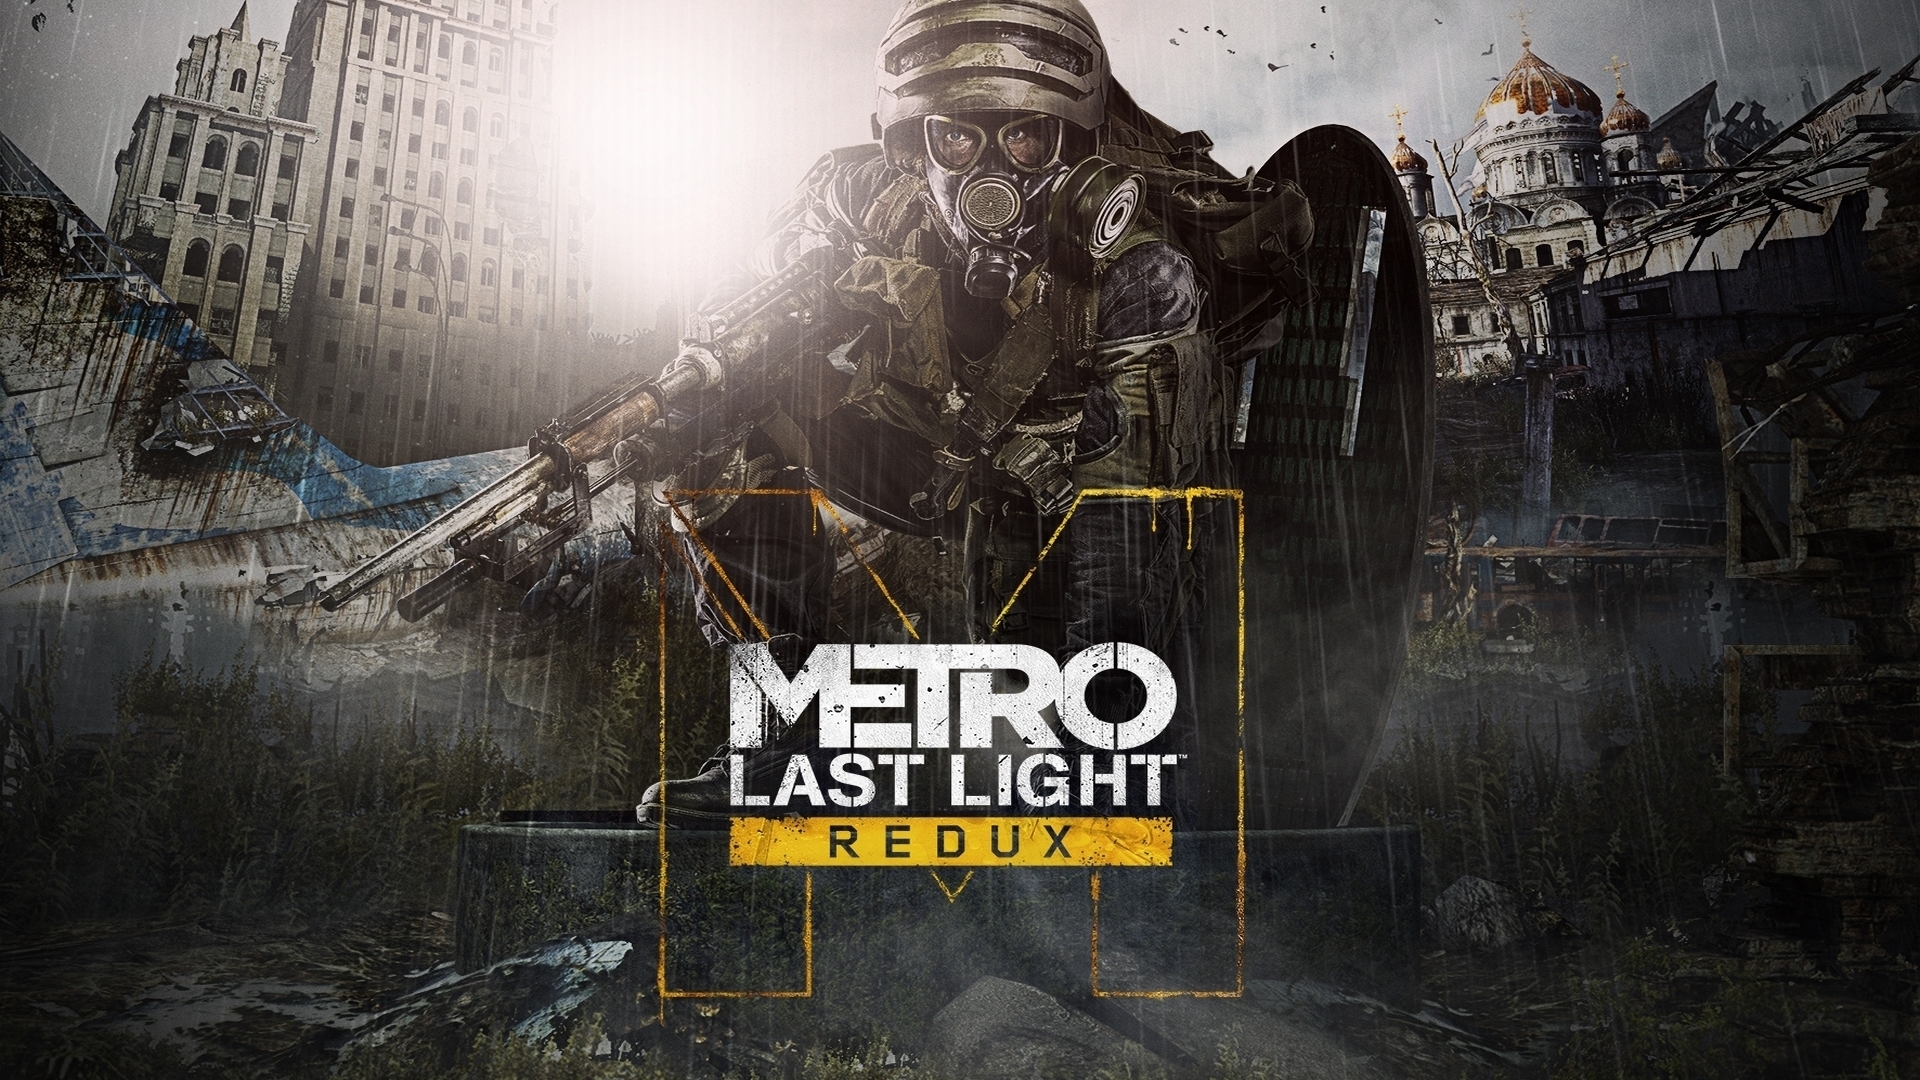 Metro Last Light Redux for 1920 x 1080 HDTV 1080p resolution